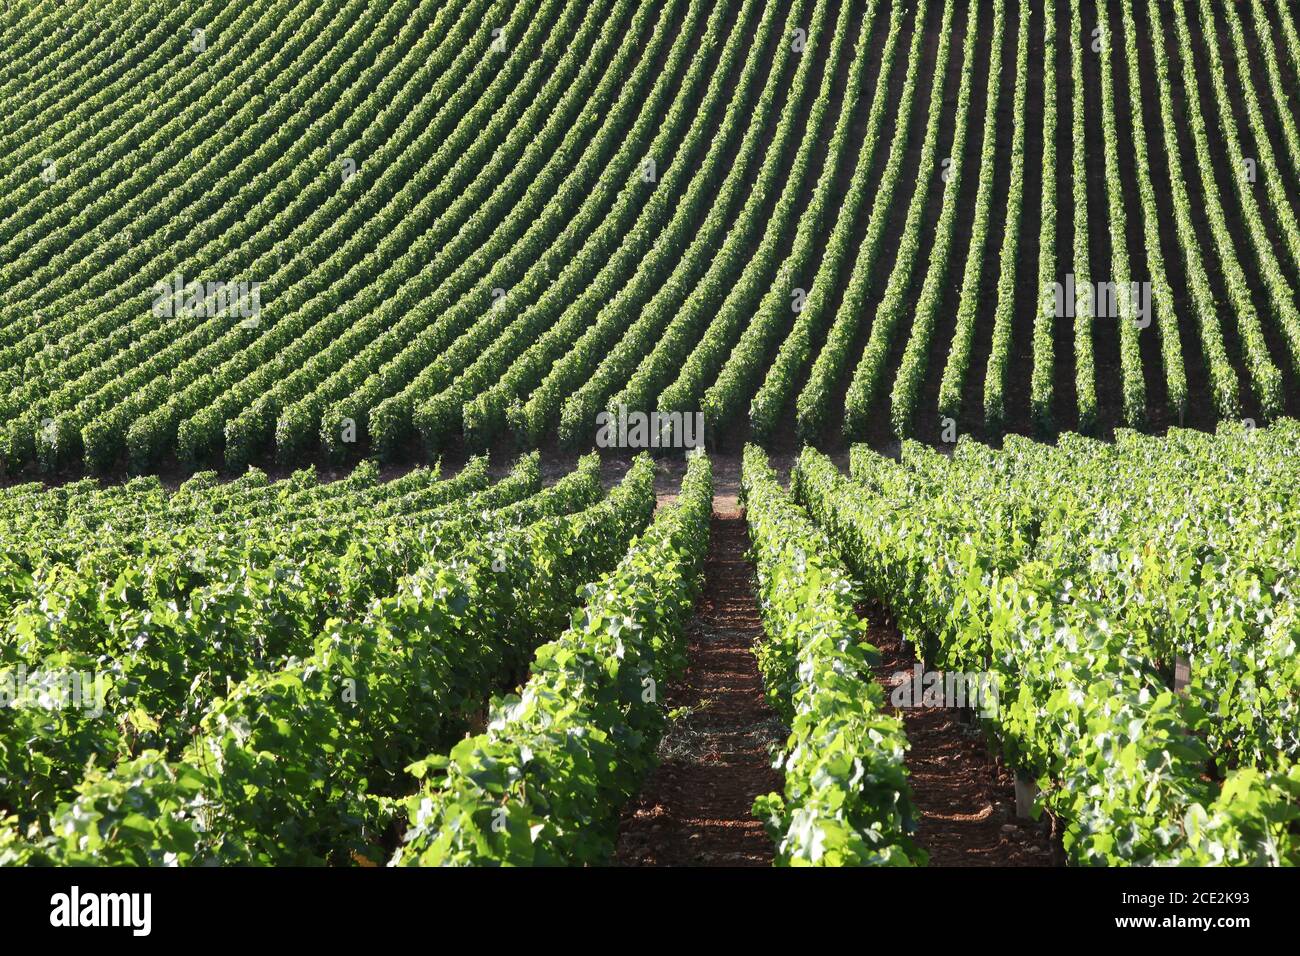 Vignoble de Bourgogne, France Banque D'Images